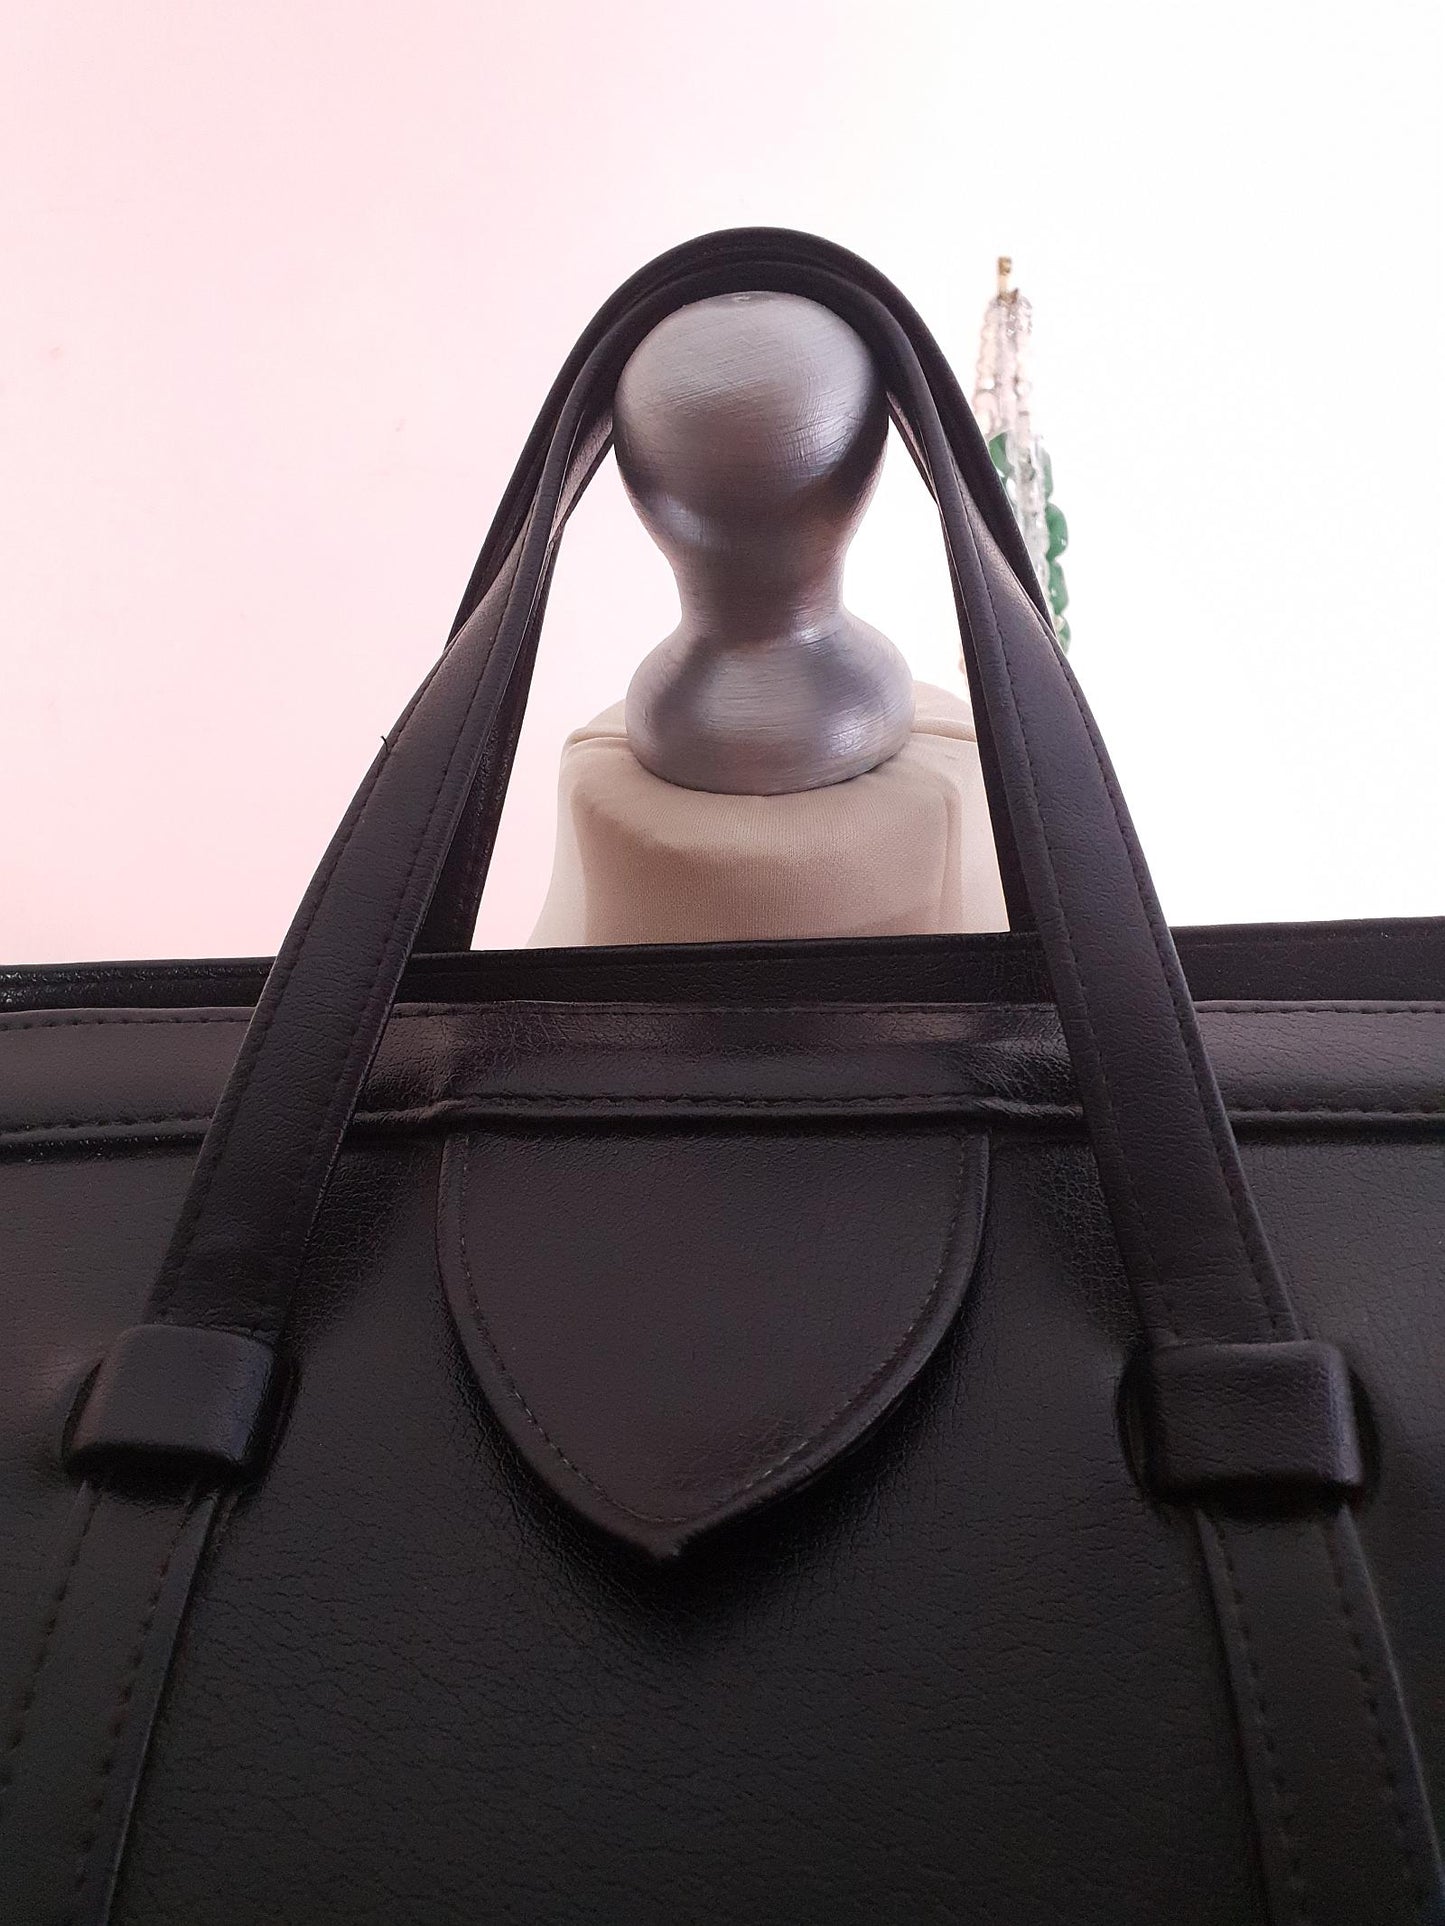 Vintage 1960s Black Handbag Tote Retro Bag Top Handle